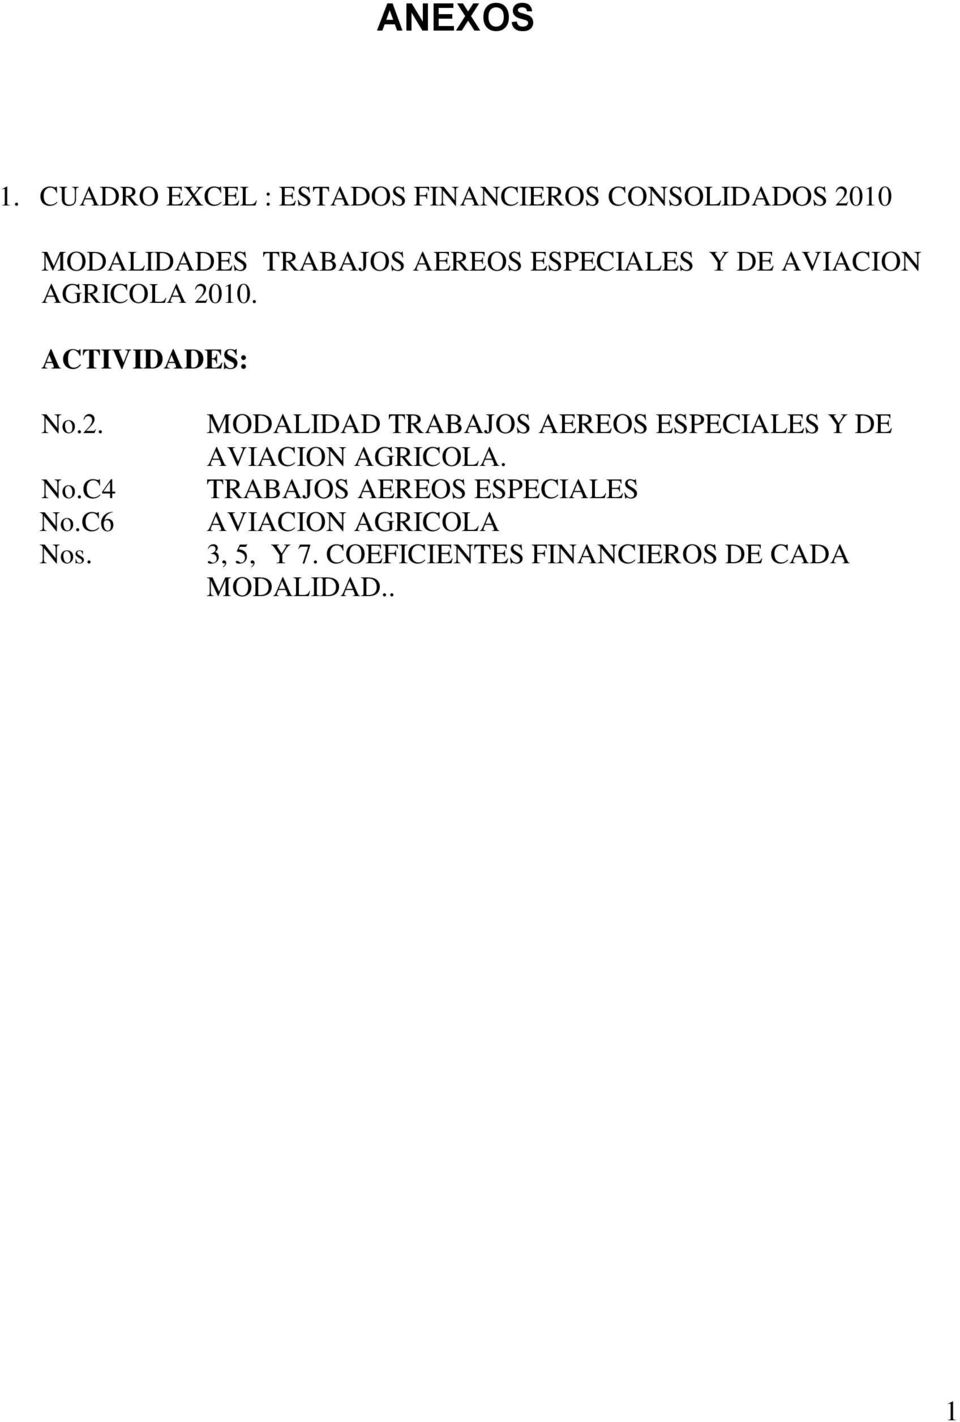 ESPECIALES Y DE AVIACION AGRICOLA 2010. ACTIVIDADES: No.2. No.C4 No.C6 Nos.